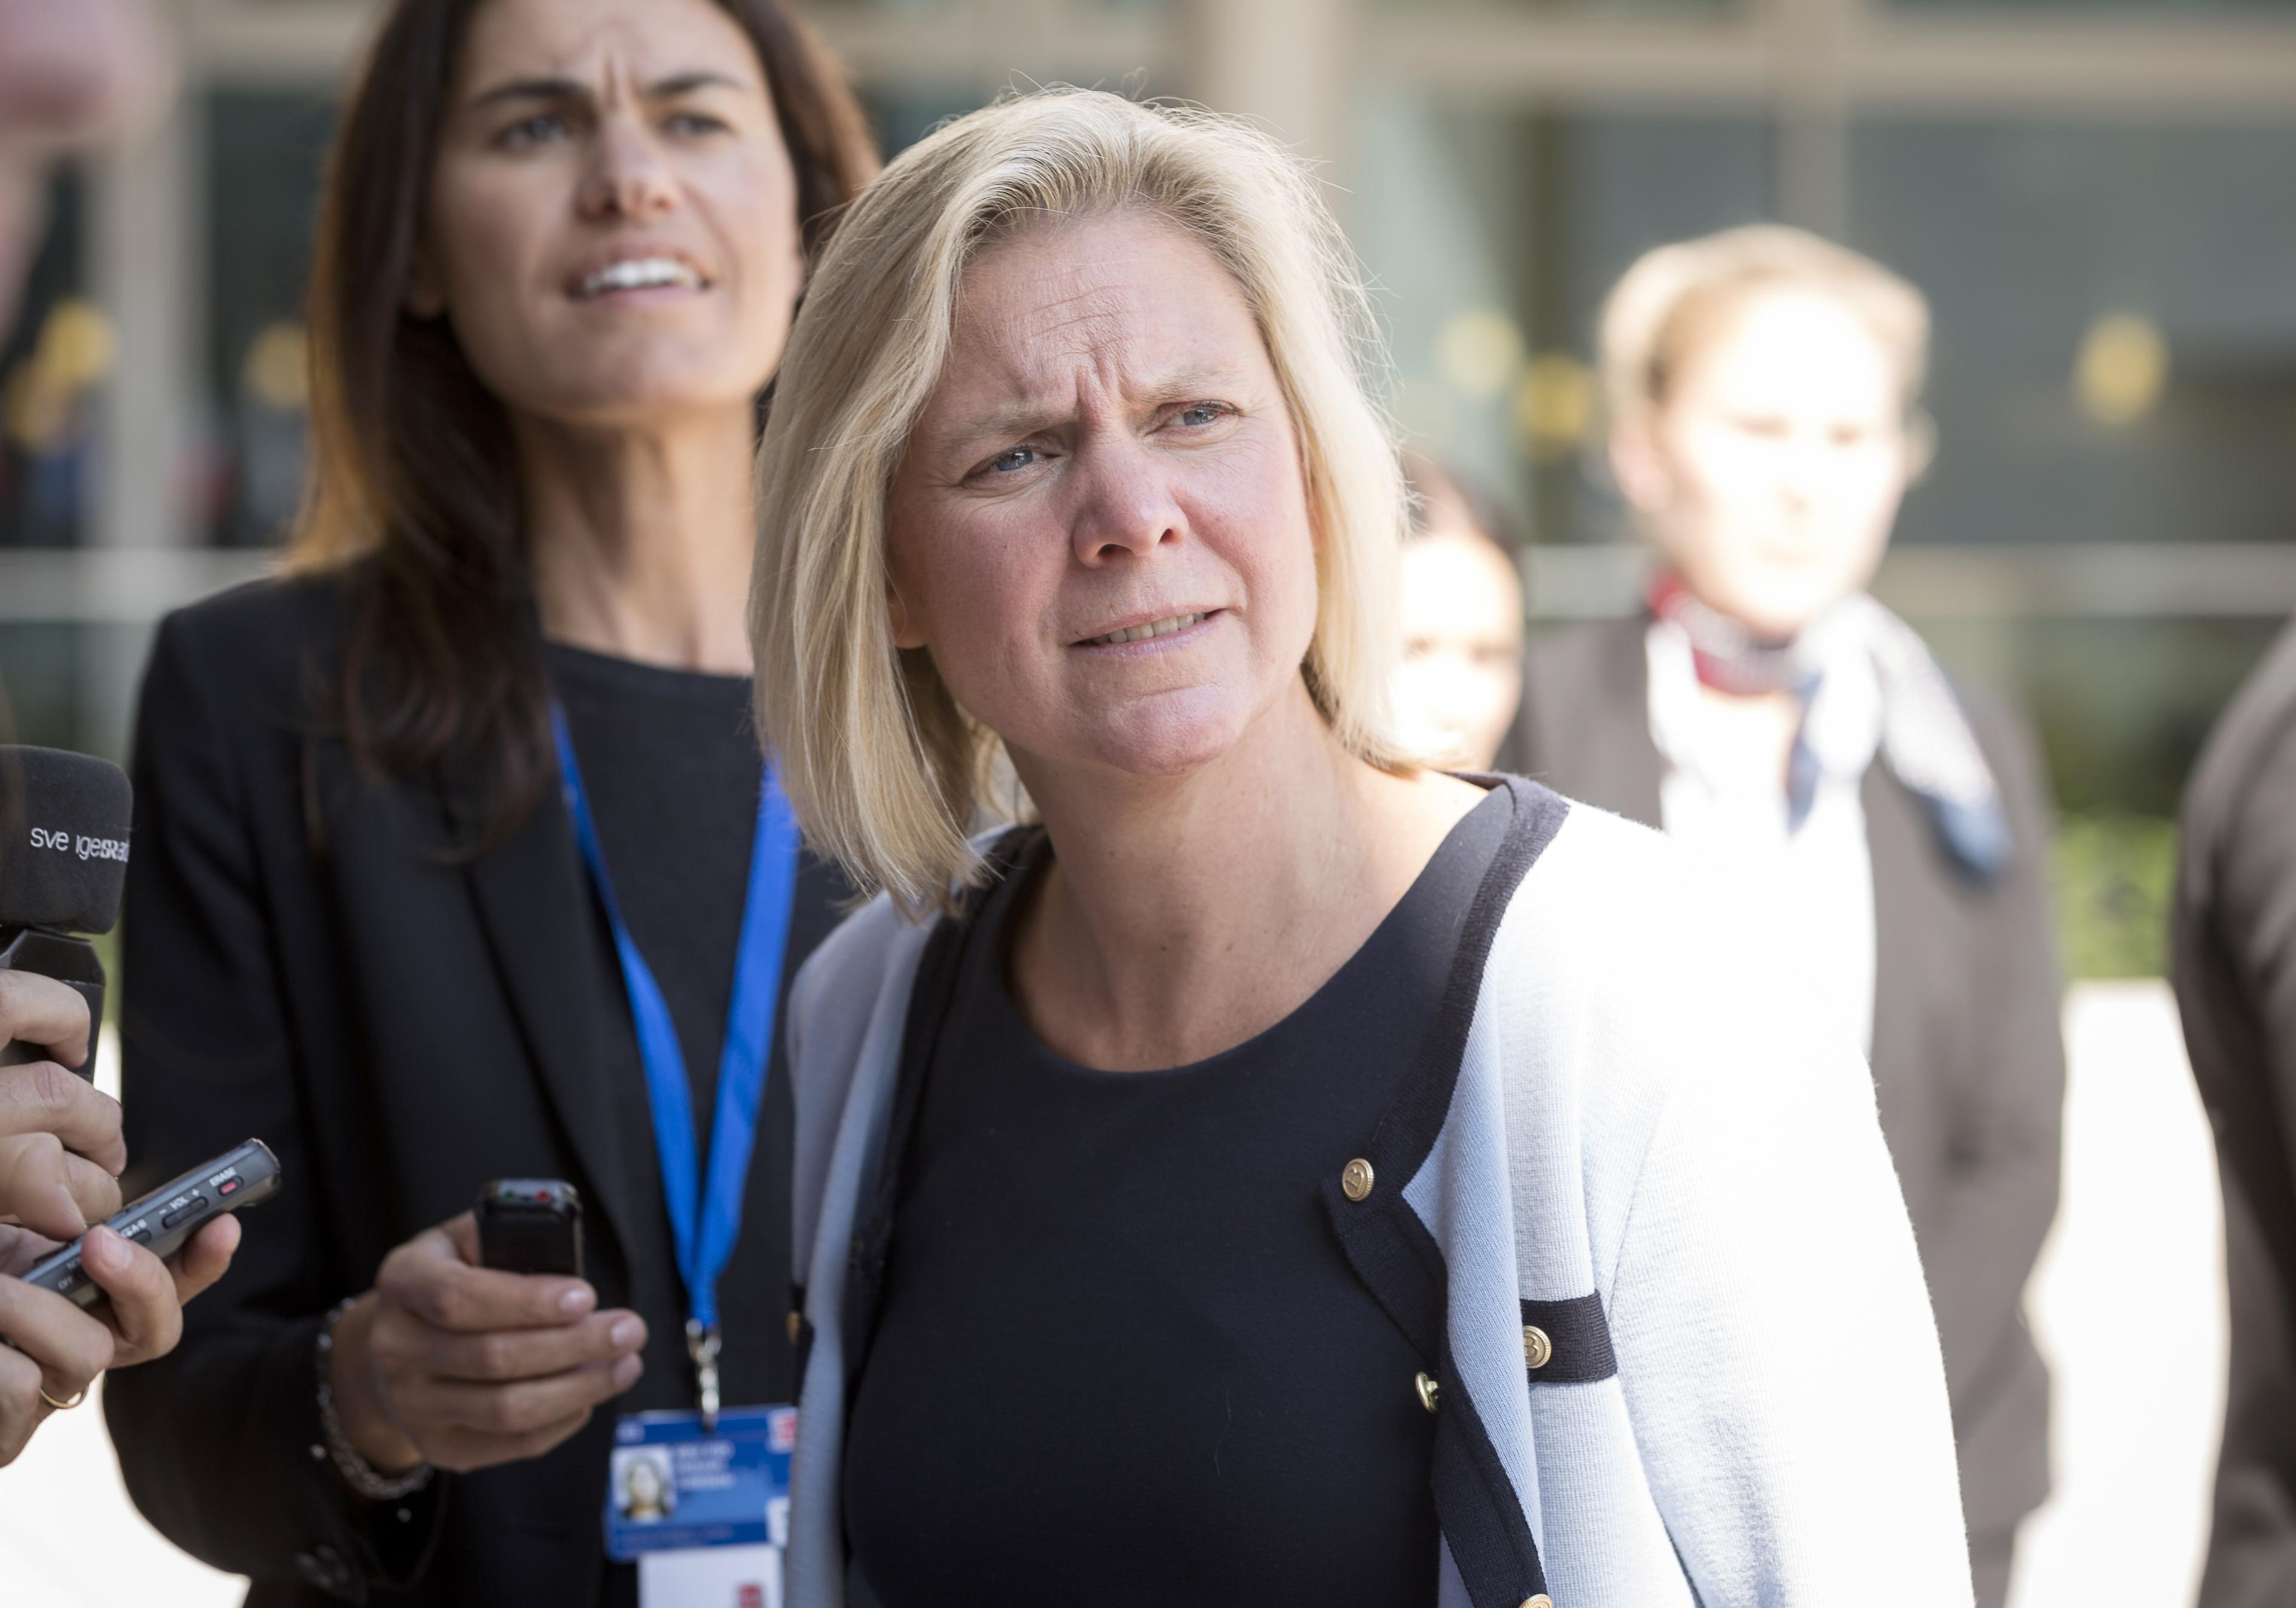 Magdalena Andersson kan fortsätta gå till jobbet som finansminister. SD-förslaget om misstroendeförklaring gick inte igenom, vid tisdagens omröstning i riksdagen. (Foto: Thierry Monasse /AFP/Getty Images)

